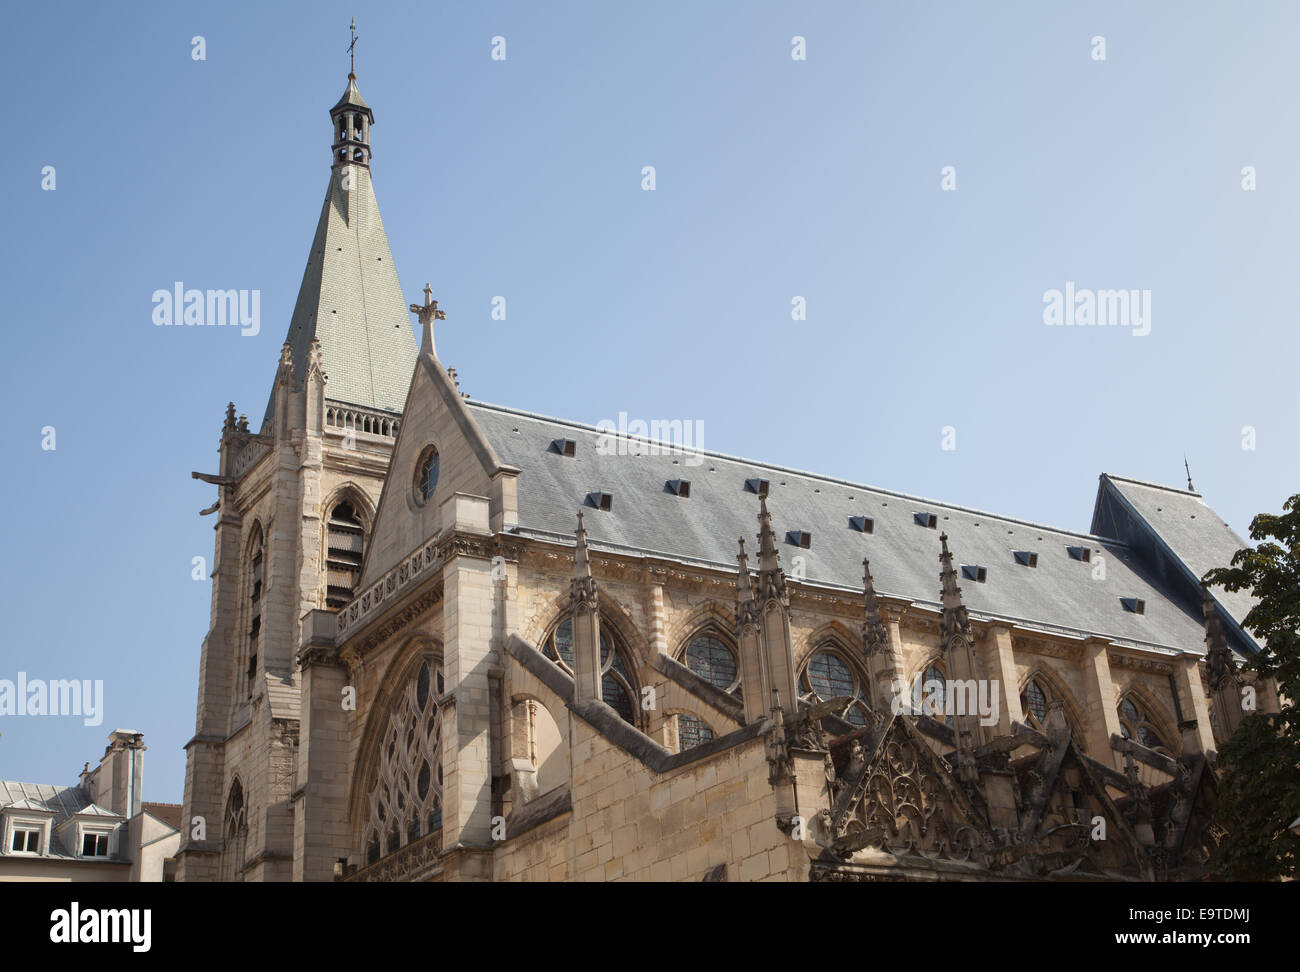 The Church of Saint-Séverin, Paris, France. Stock Photo